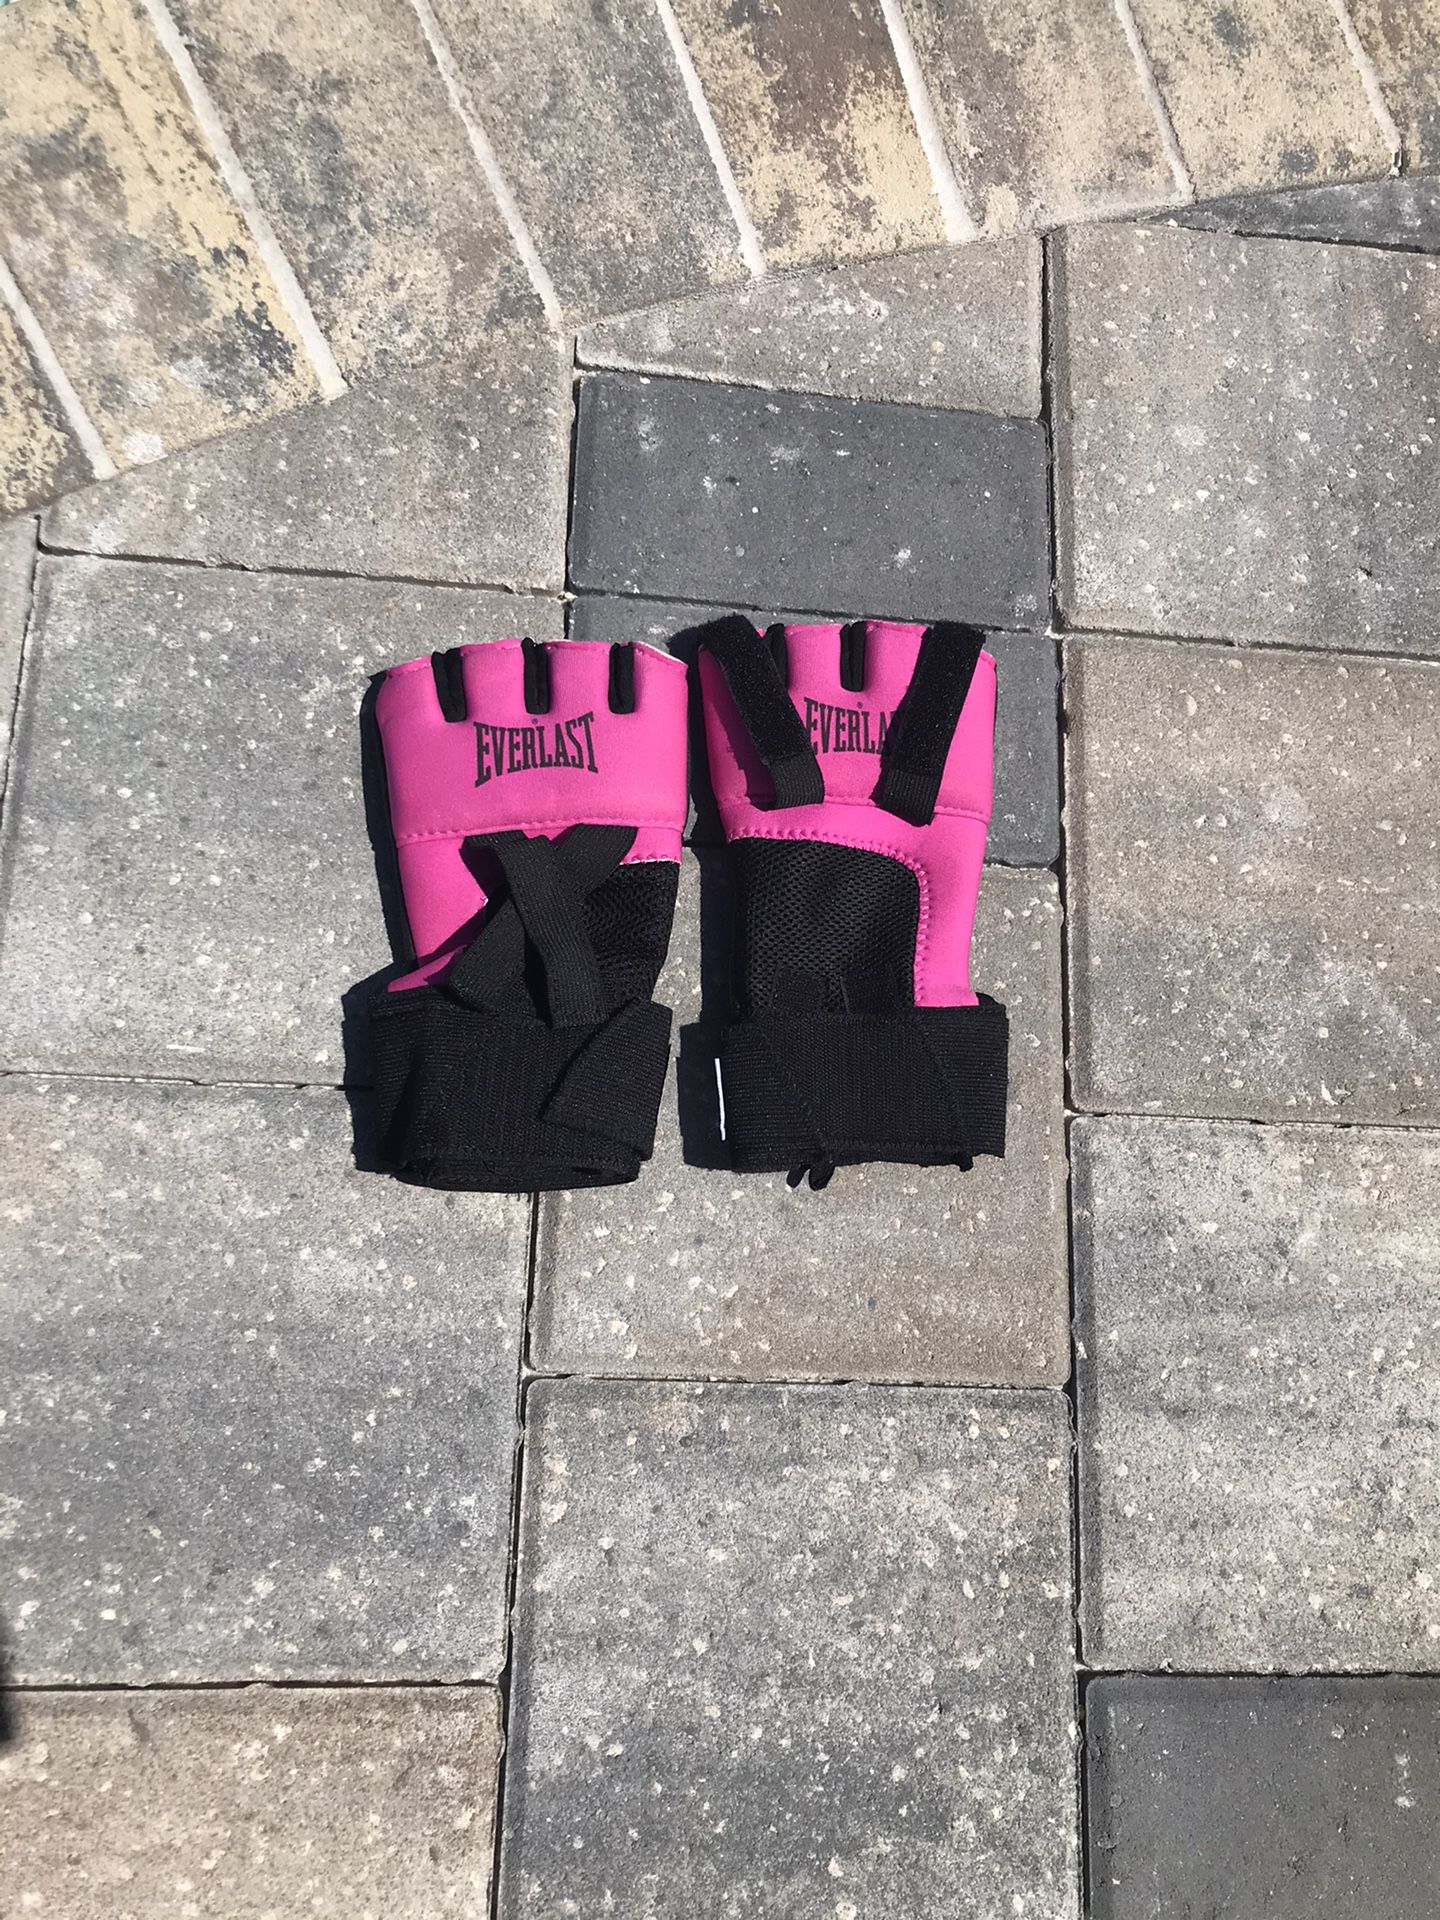 Women’s Everlasting MMA hLf ginger punching ball gloves in pink.